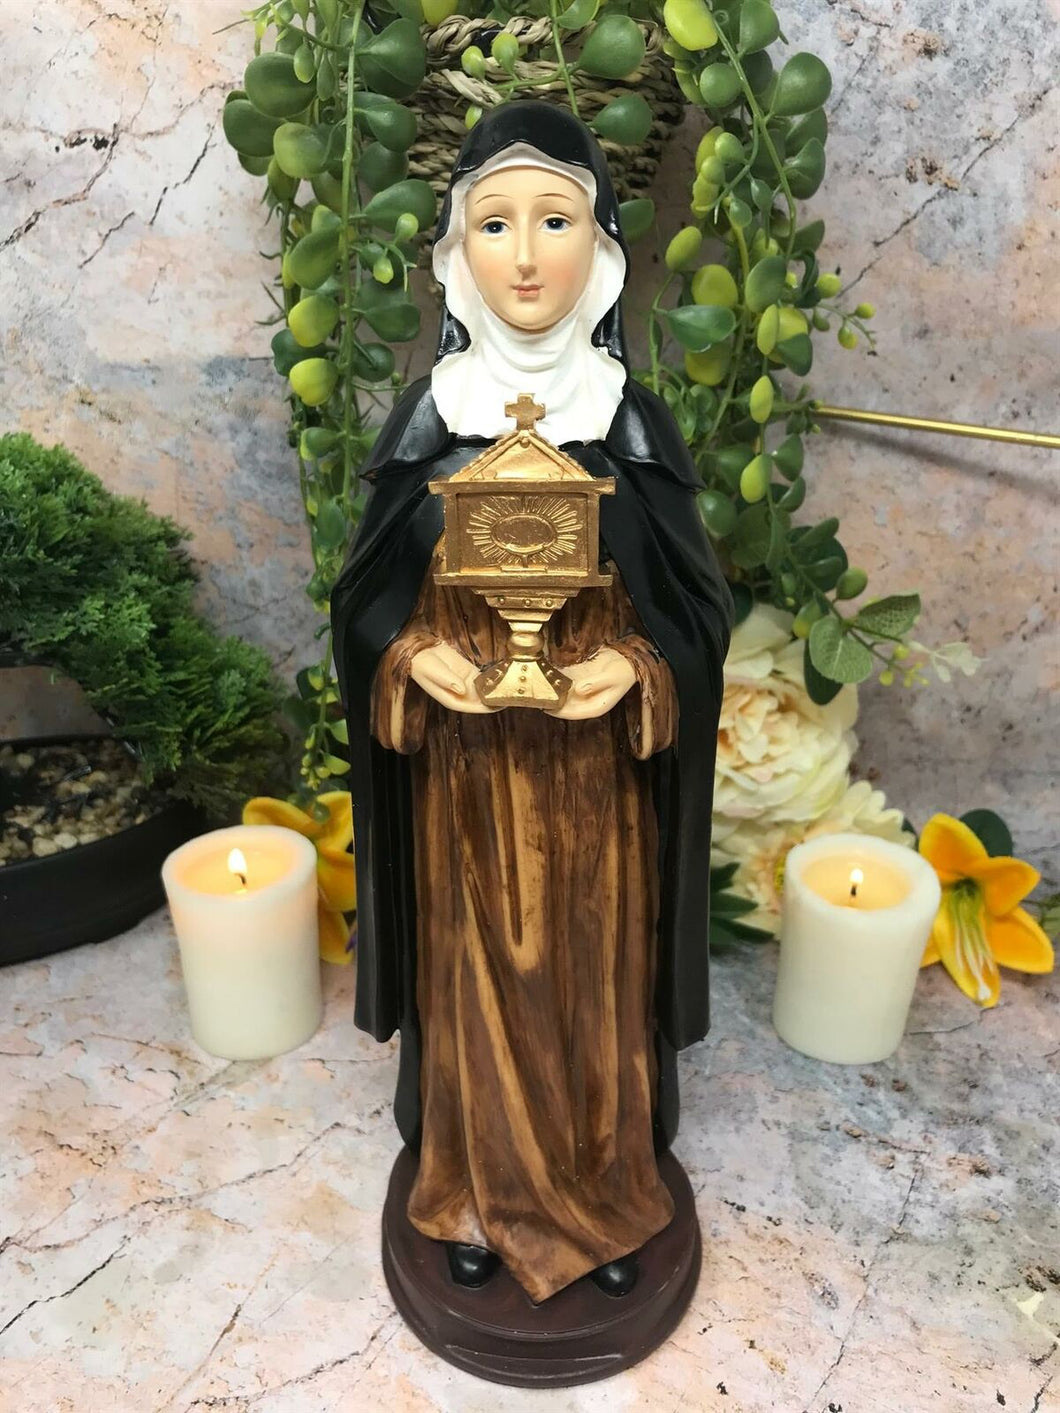 Saint Clare of Assisi Statue Catholic Sculpture Religious Santa Clara Figurine